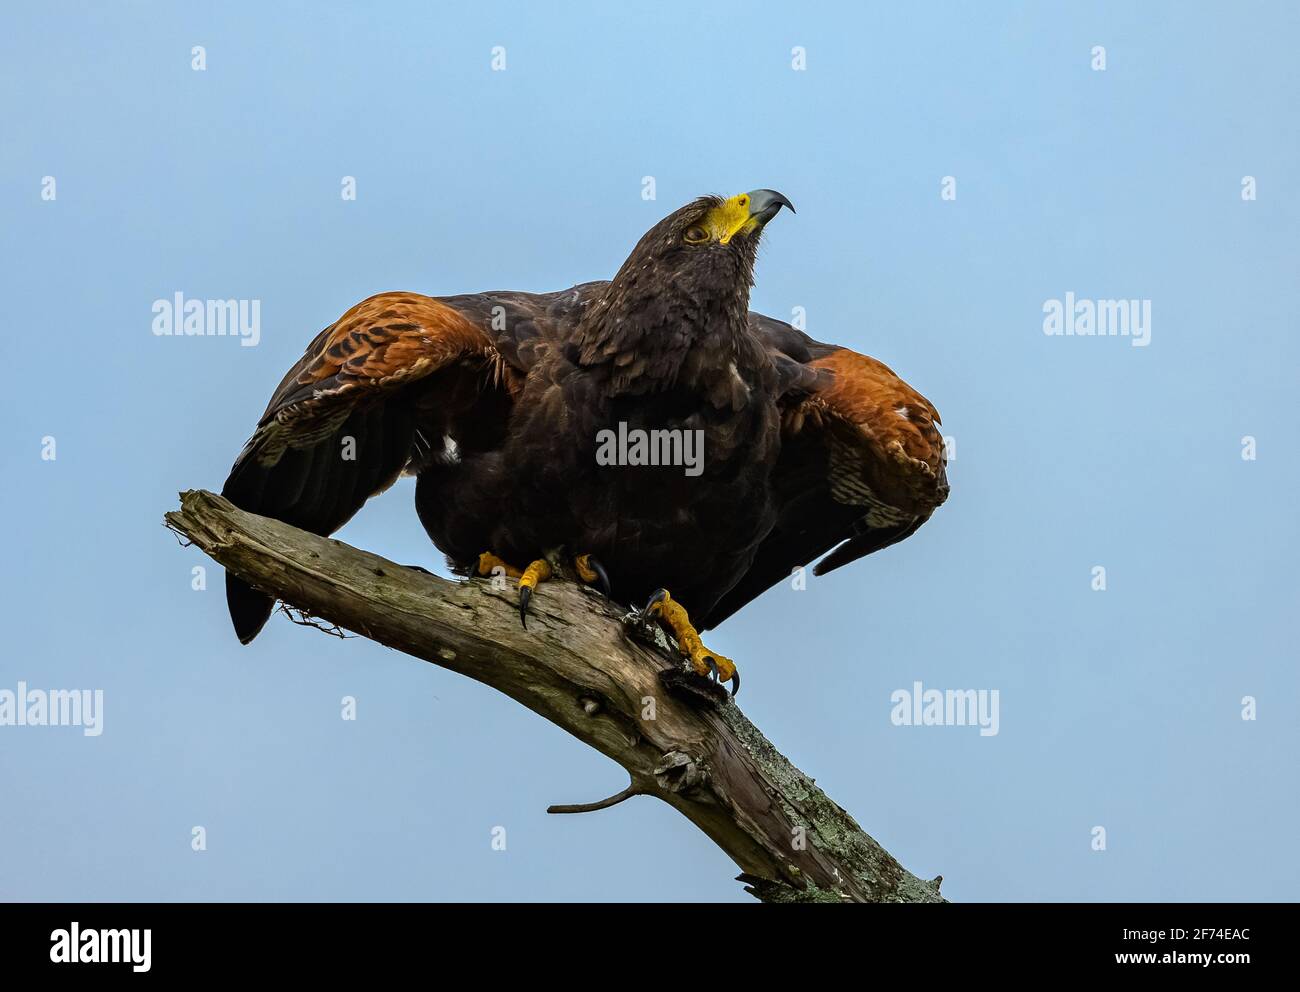 Ein wilder Harris's Hawk (Parabuteo unicinctus), der bereit ist, von einem Zweig abzuheben. Sheldon Lake State Park, Houston, Texas, USA. Stockfoto